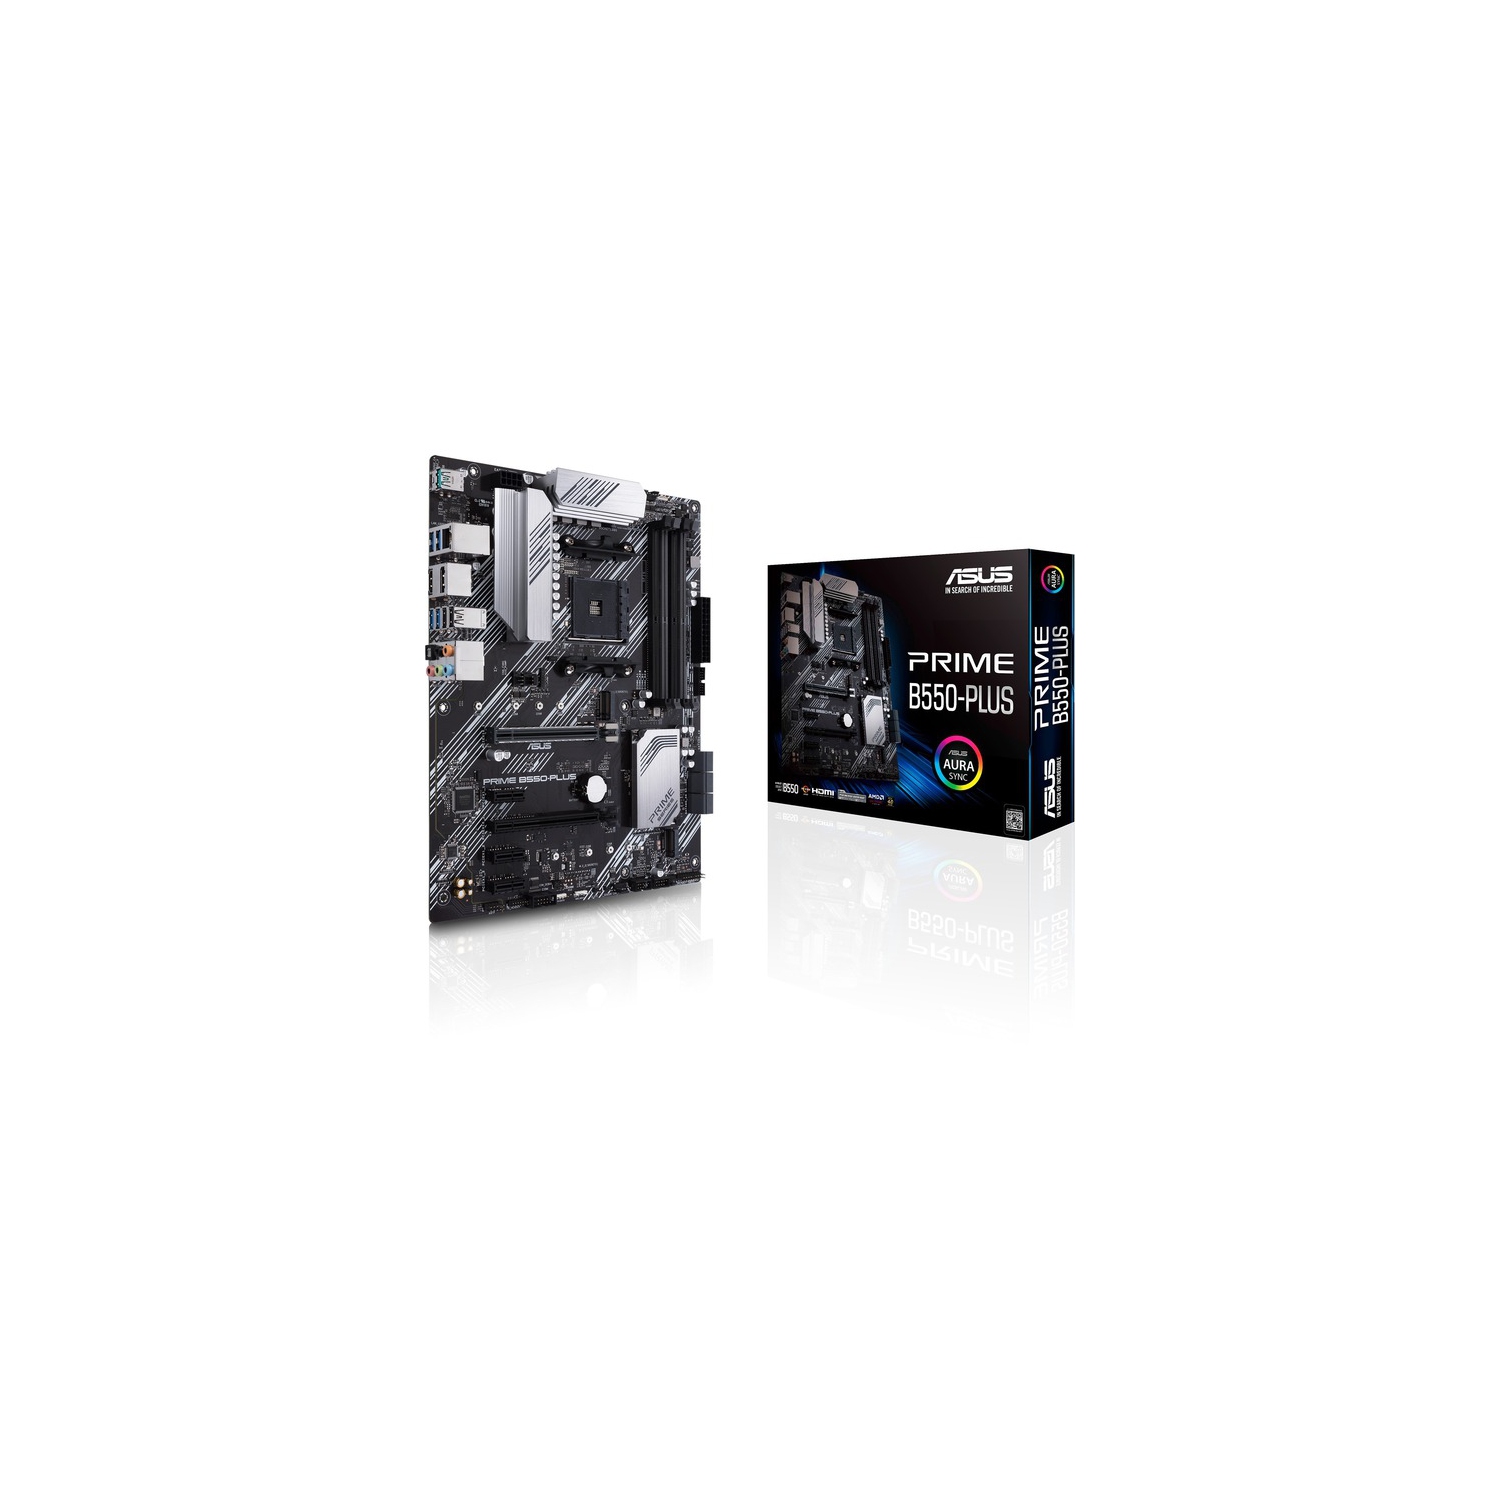 Asus Prime B550-PLUS Desktop Motherboard PRIME B550-PLUS